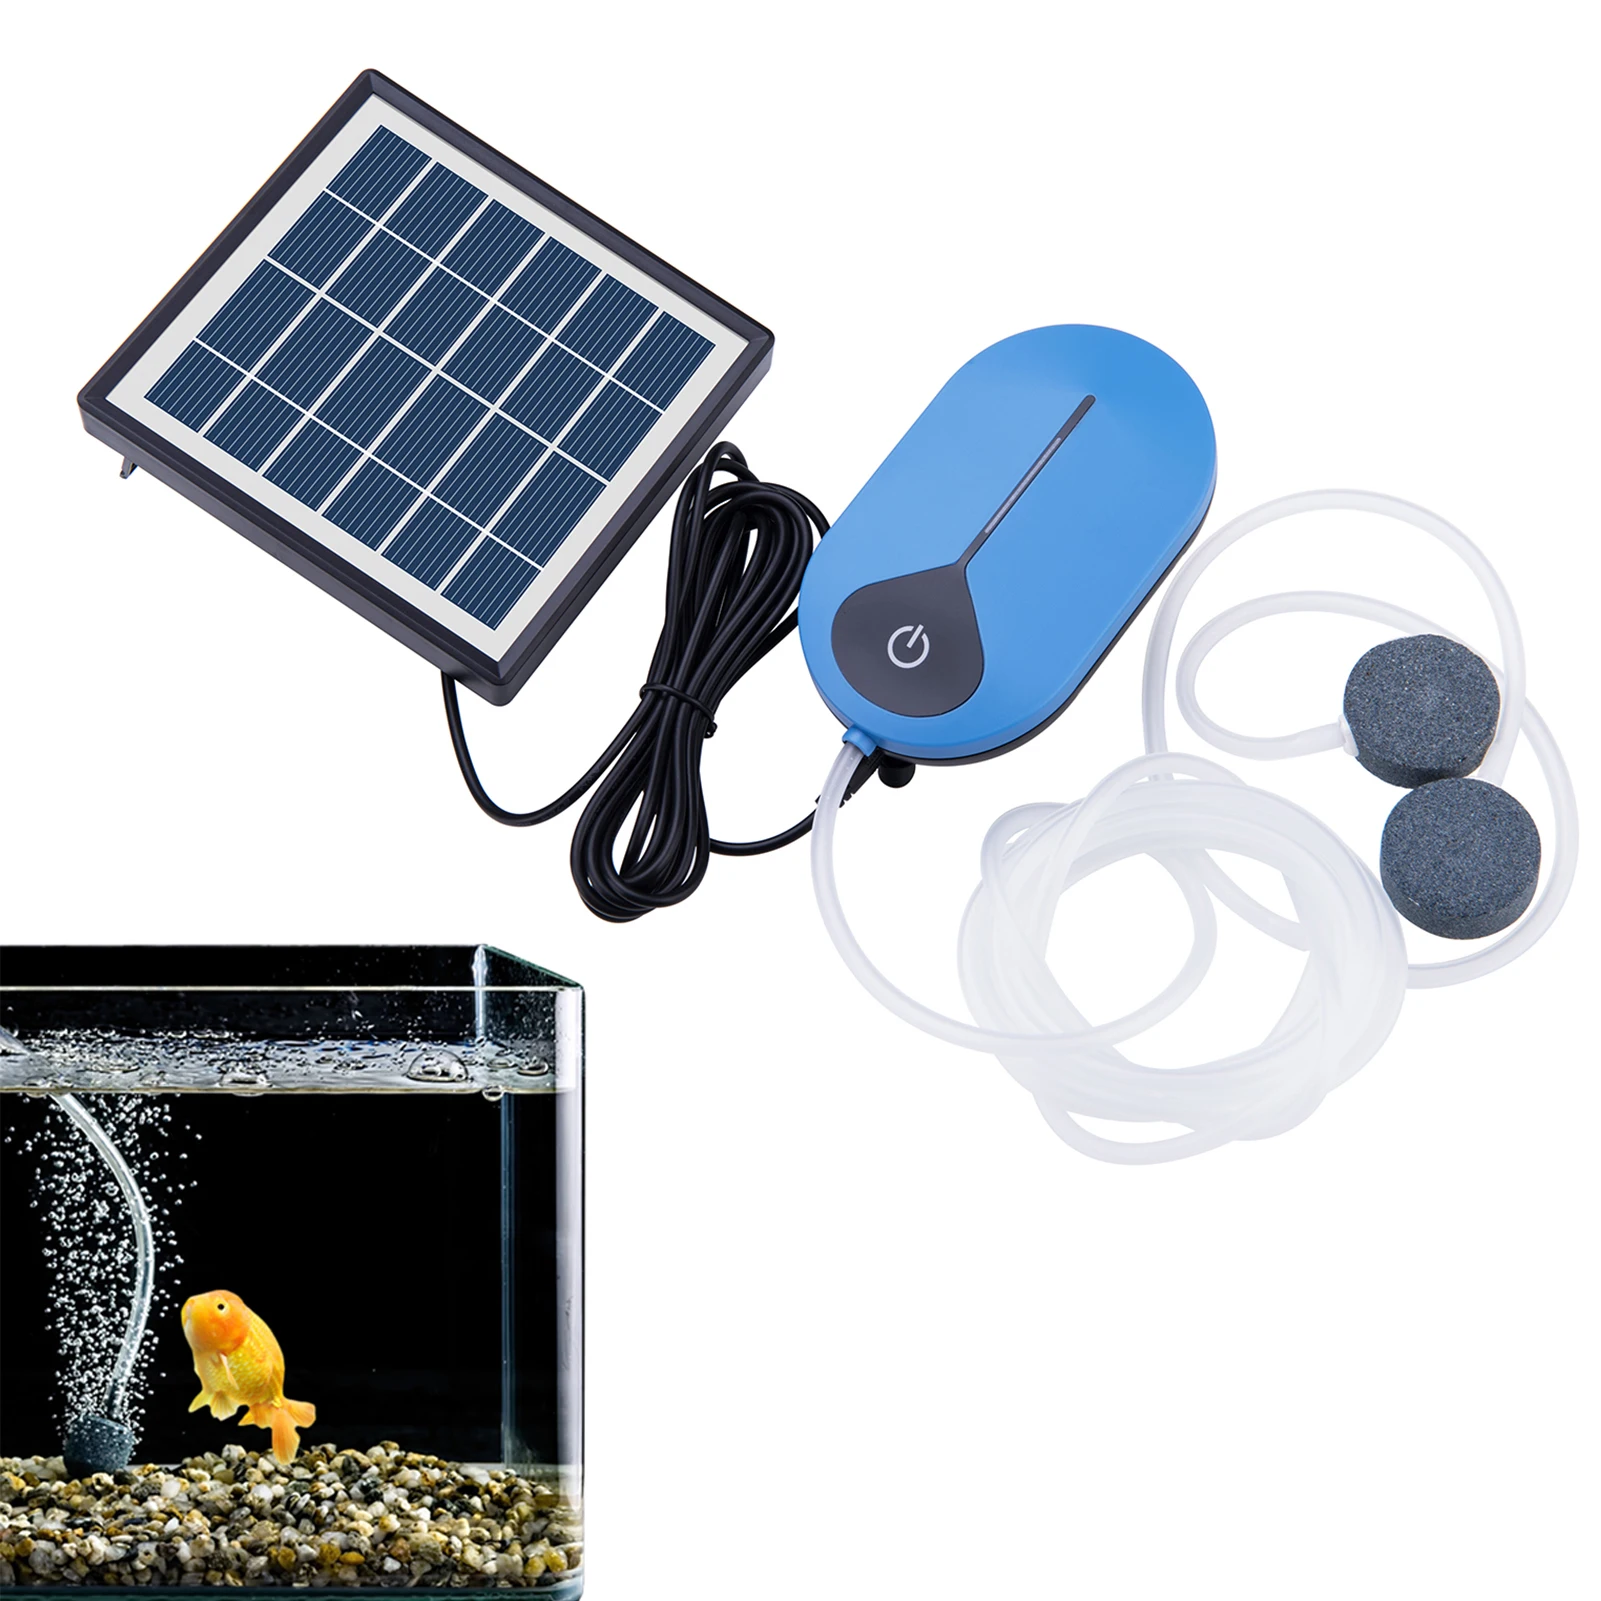 

Solar Water Pump Kit Aquarium Pond Oxygen Pump Solar Panel For Fish Pond Aquaculture Hydroponics Bubbleponics